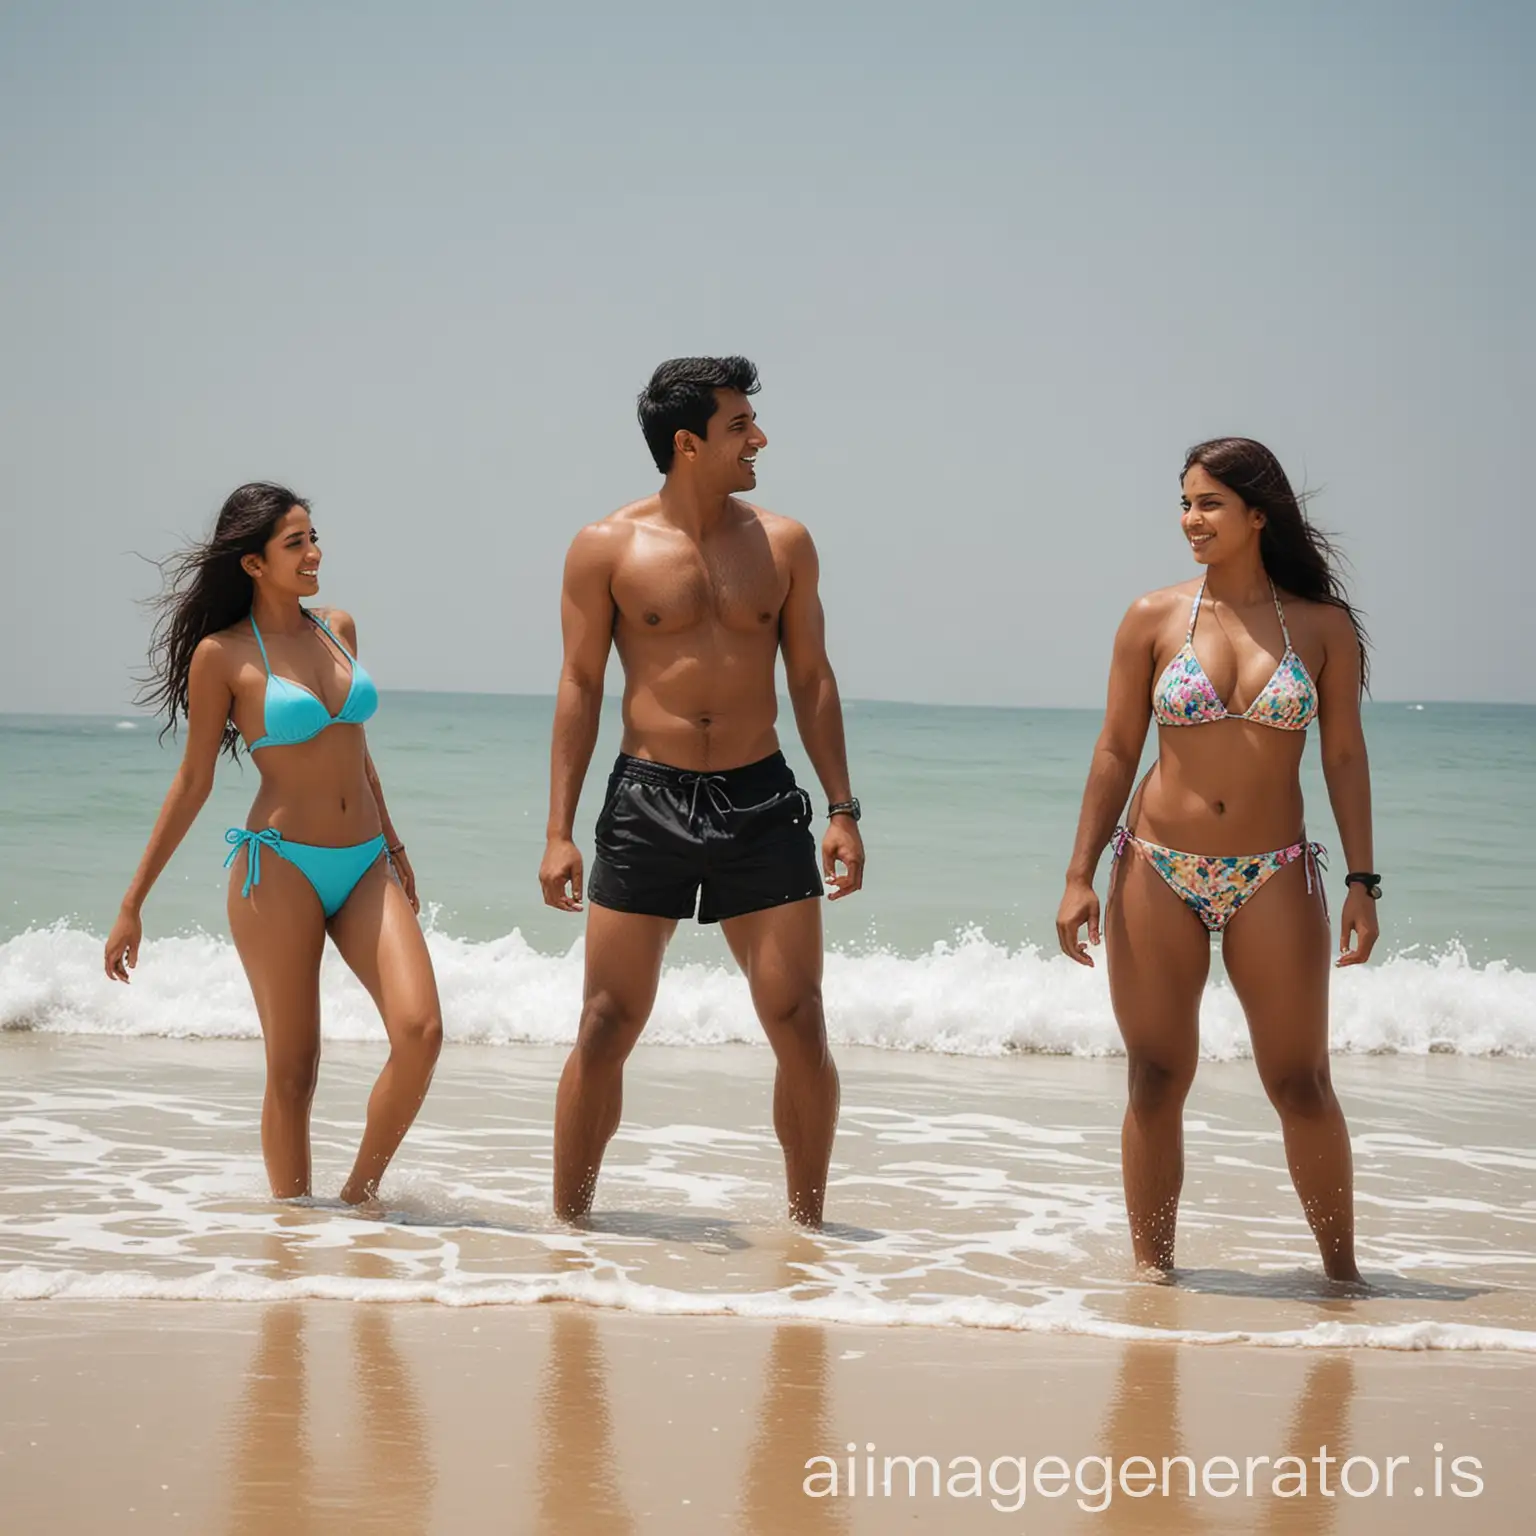 Indian-Man-Enjoying-Beach-Time-with-BikiniClad-Women